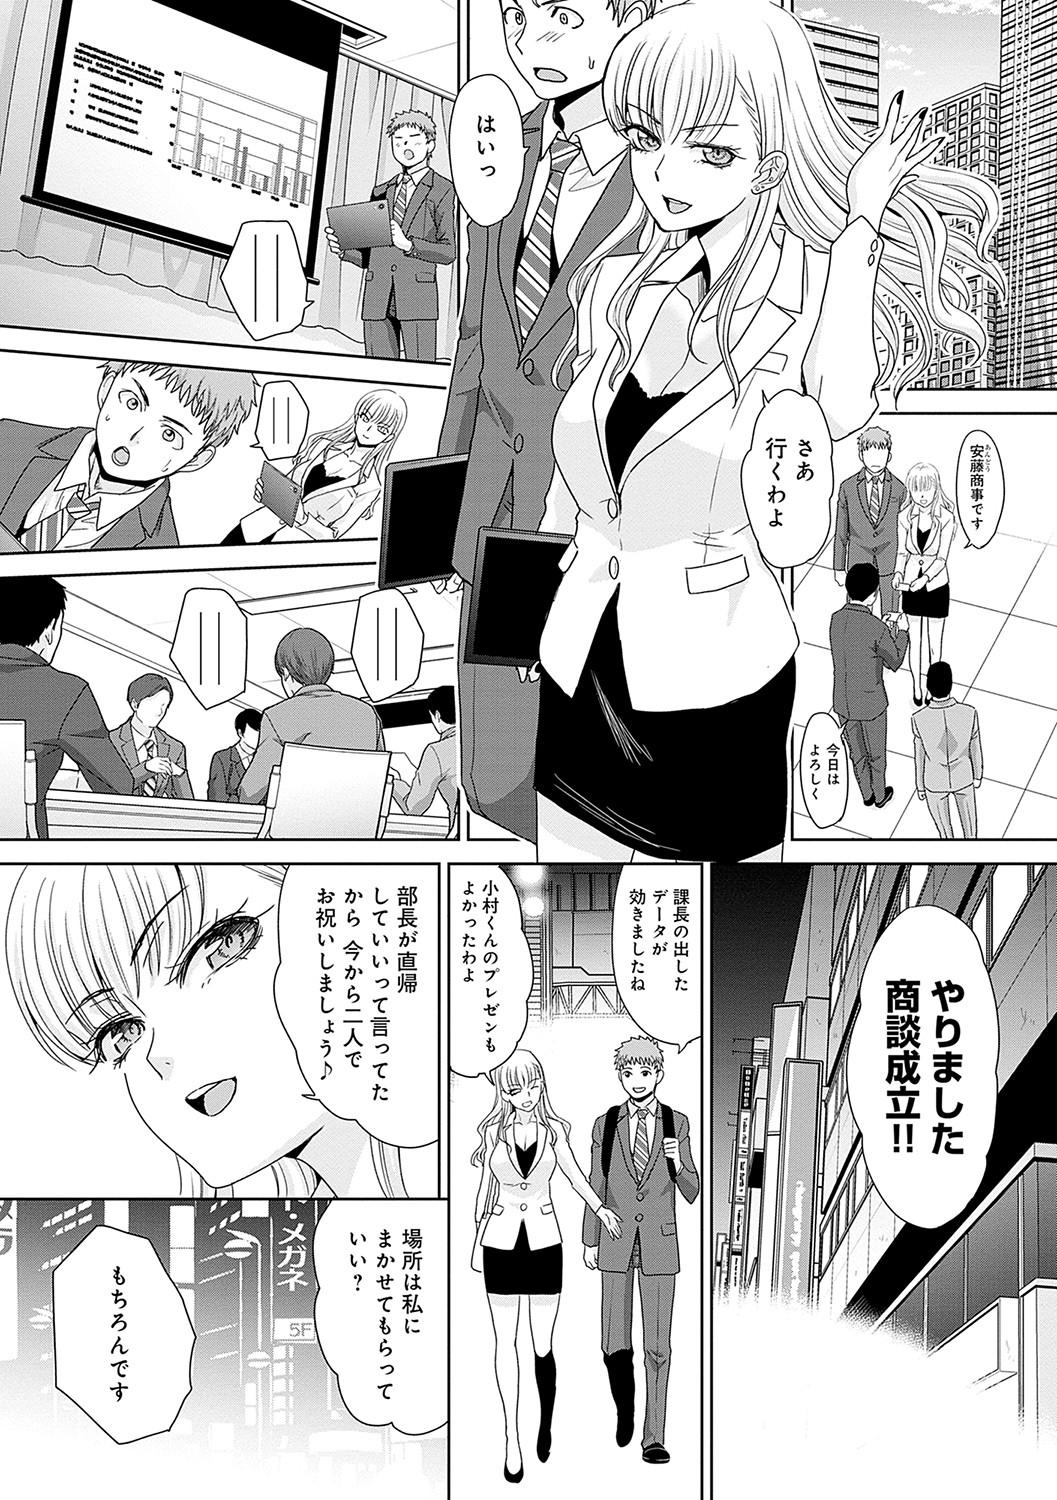 Penetration Tsukiyono Kachou wa Gal o Yamerarenai - Tsukiyono The manager can't quit a gal Trio - Page 8